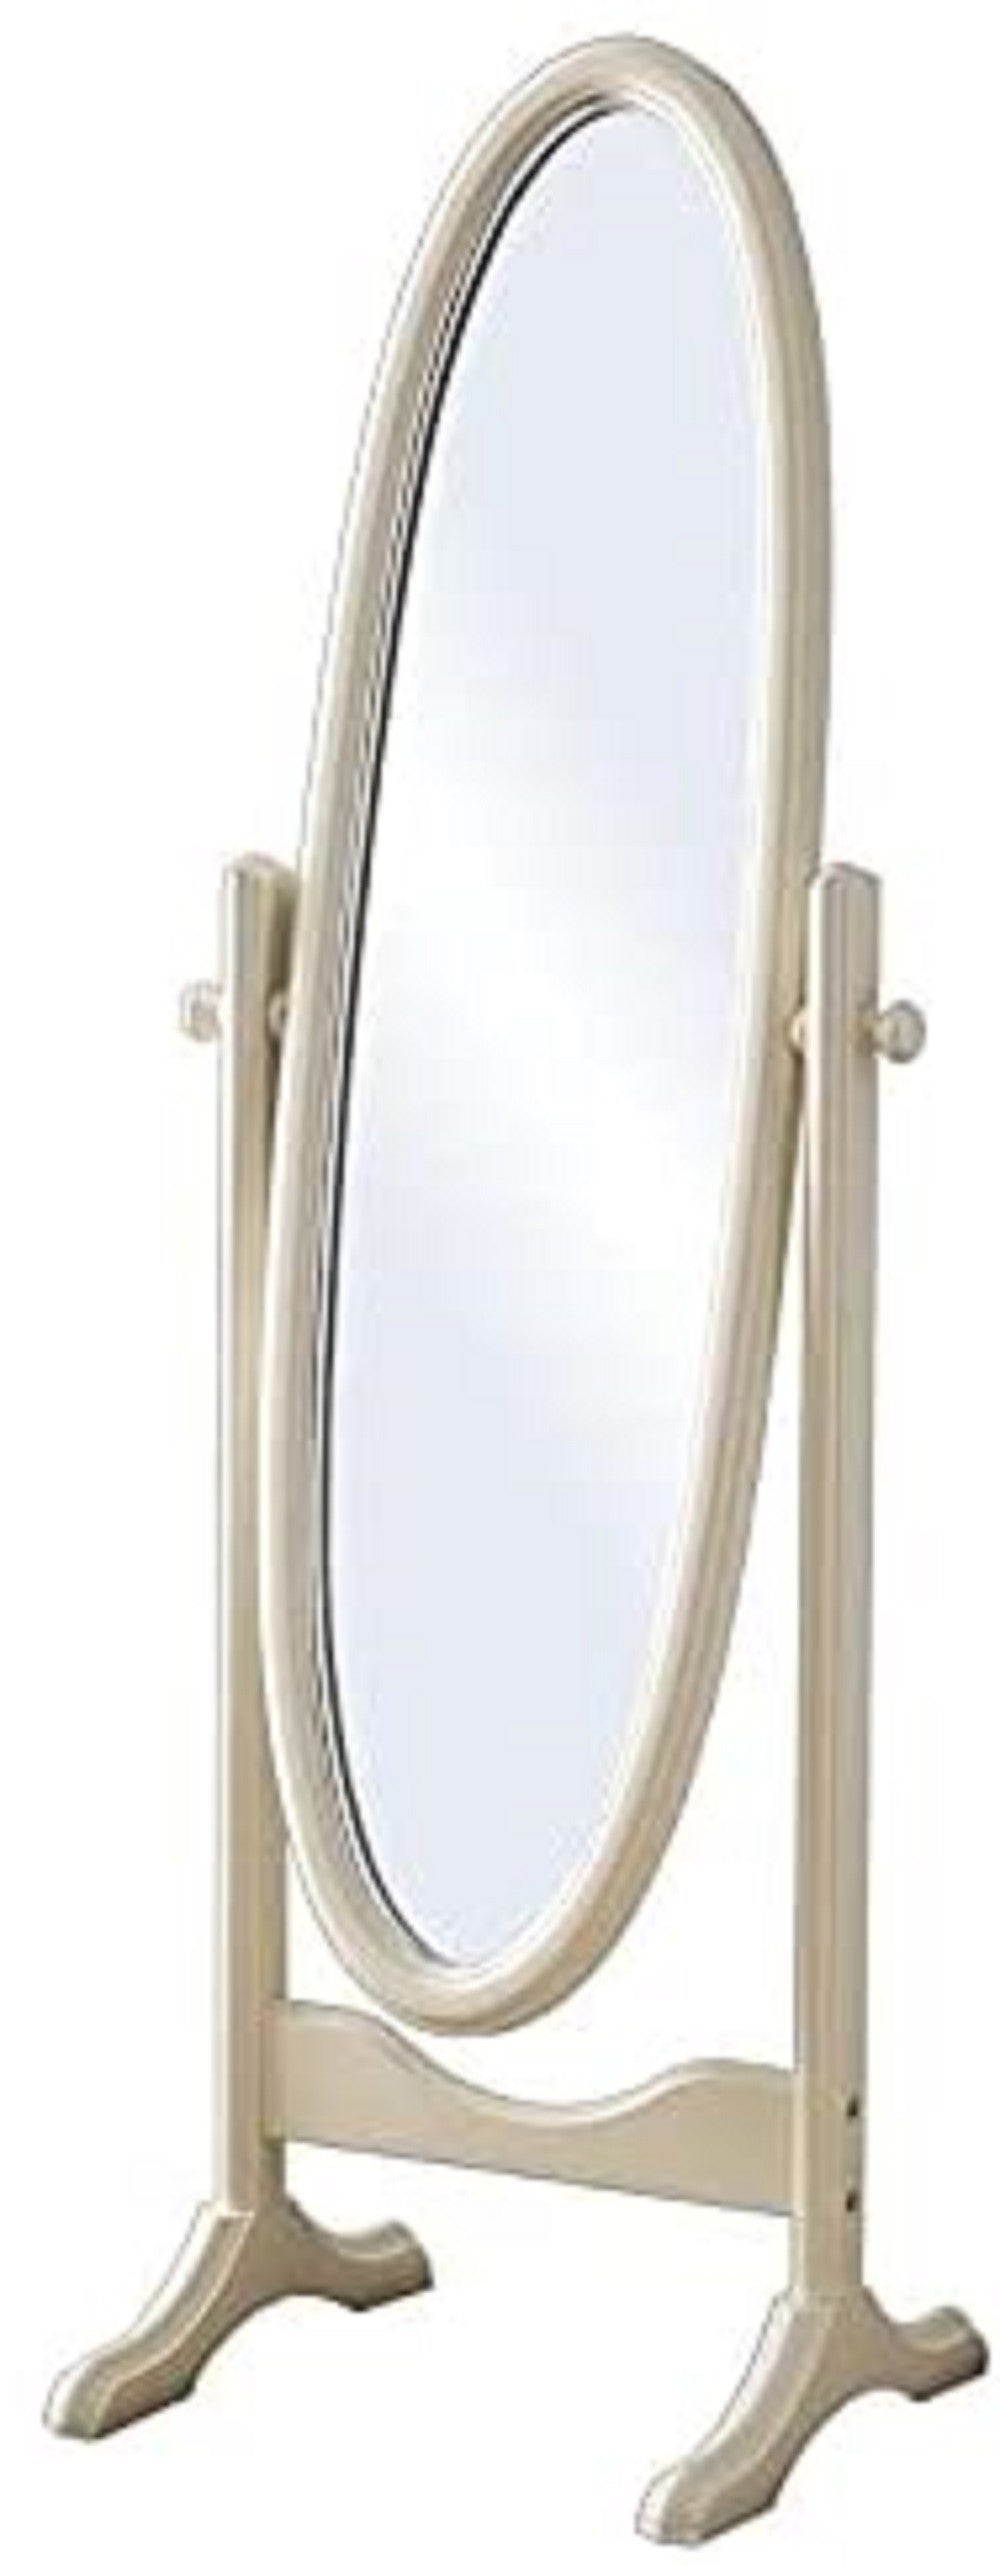 Specchiera girevole ovale laccato avorio con particolari foglia argento brillante : l.57 x h. 1